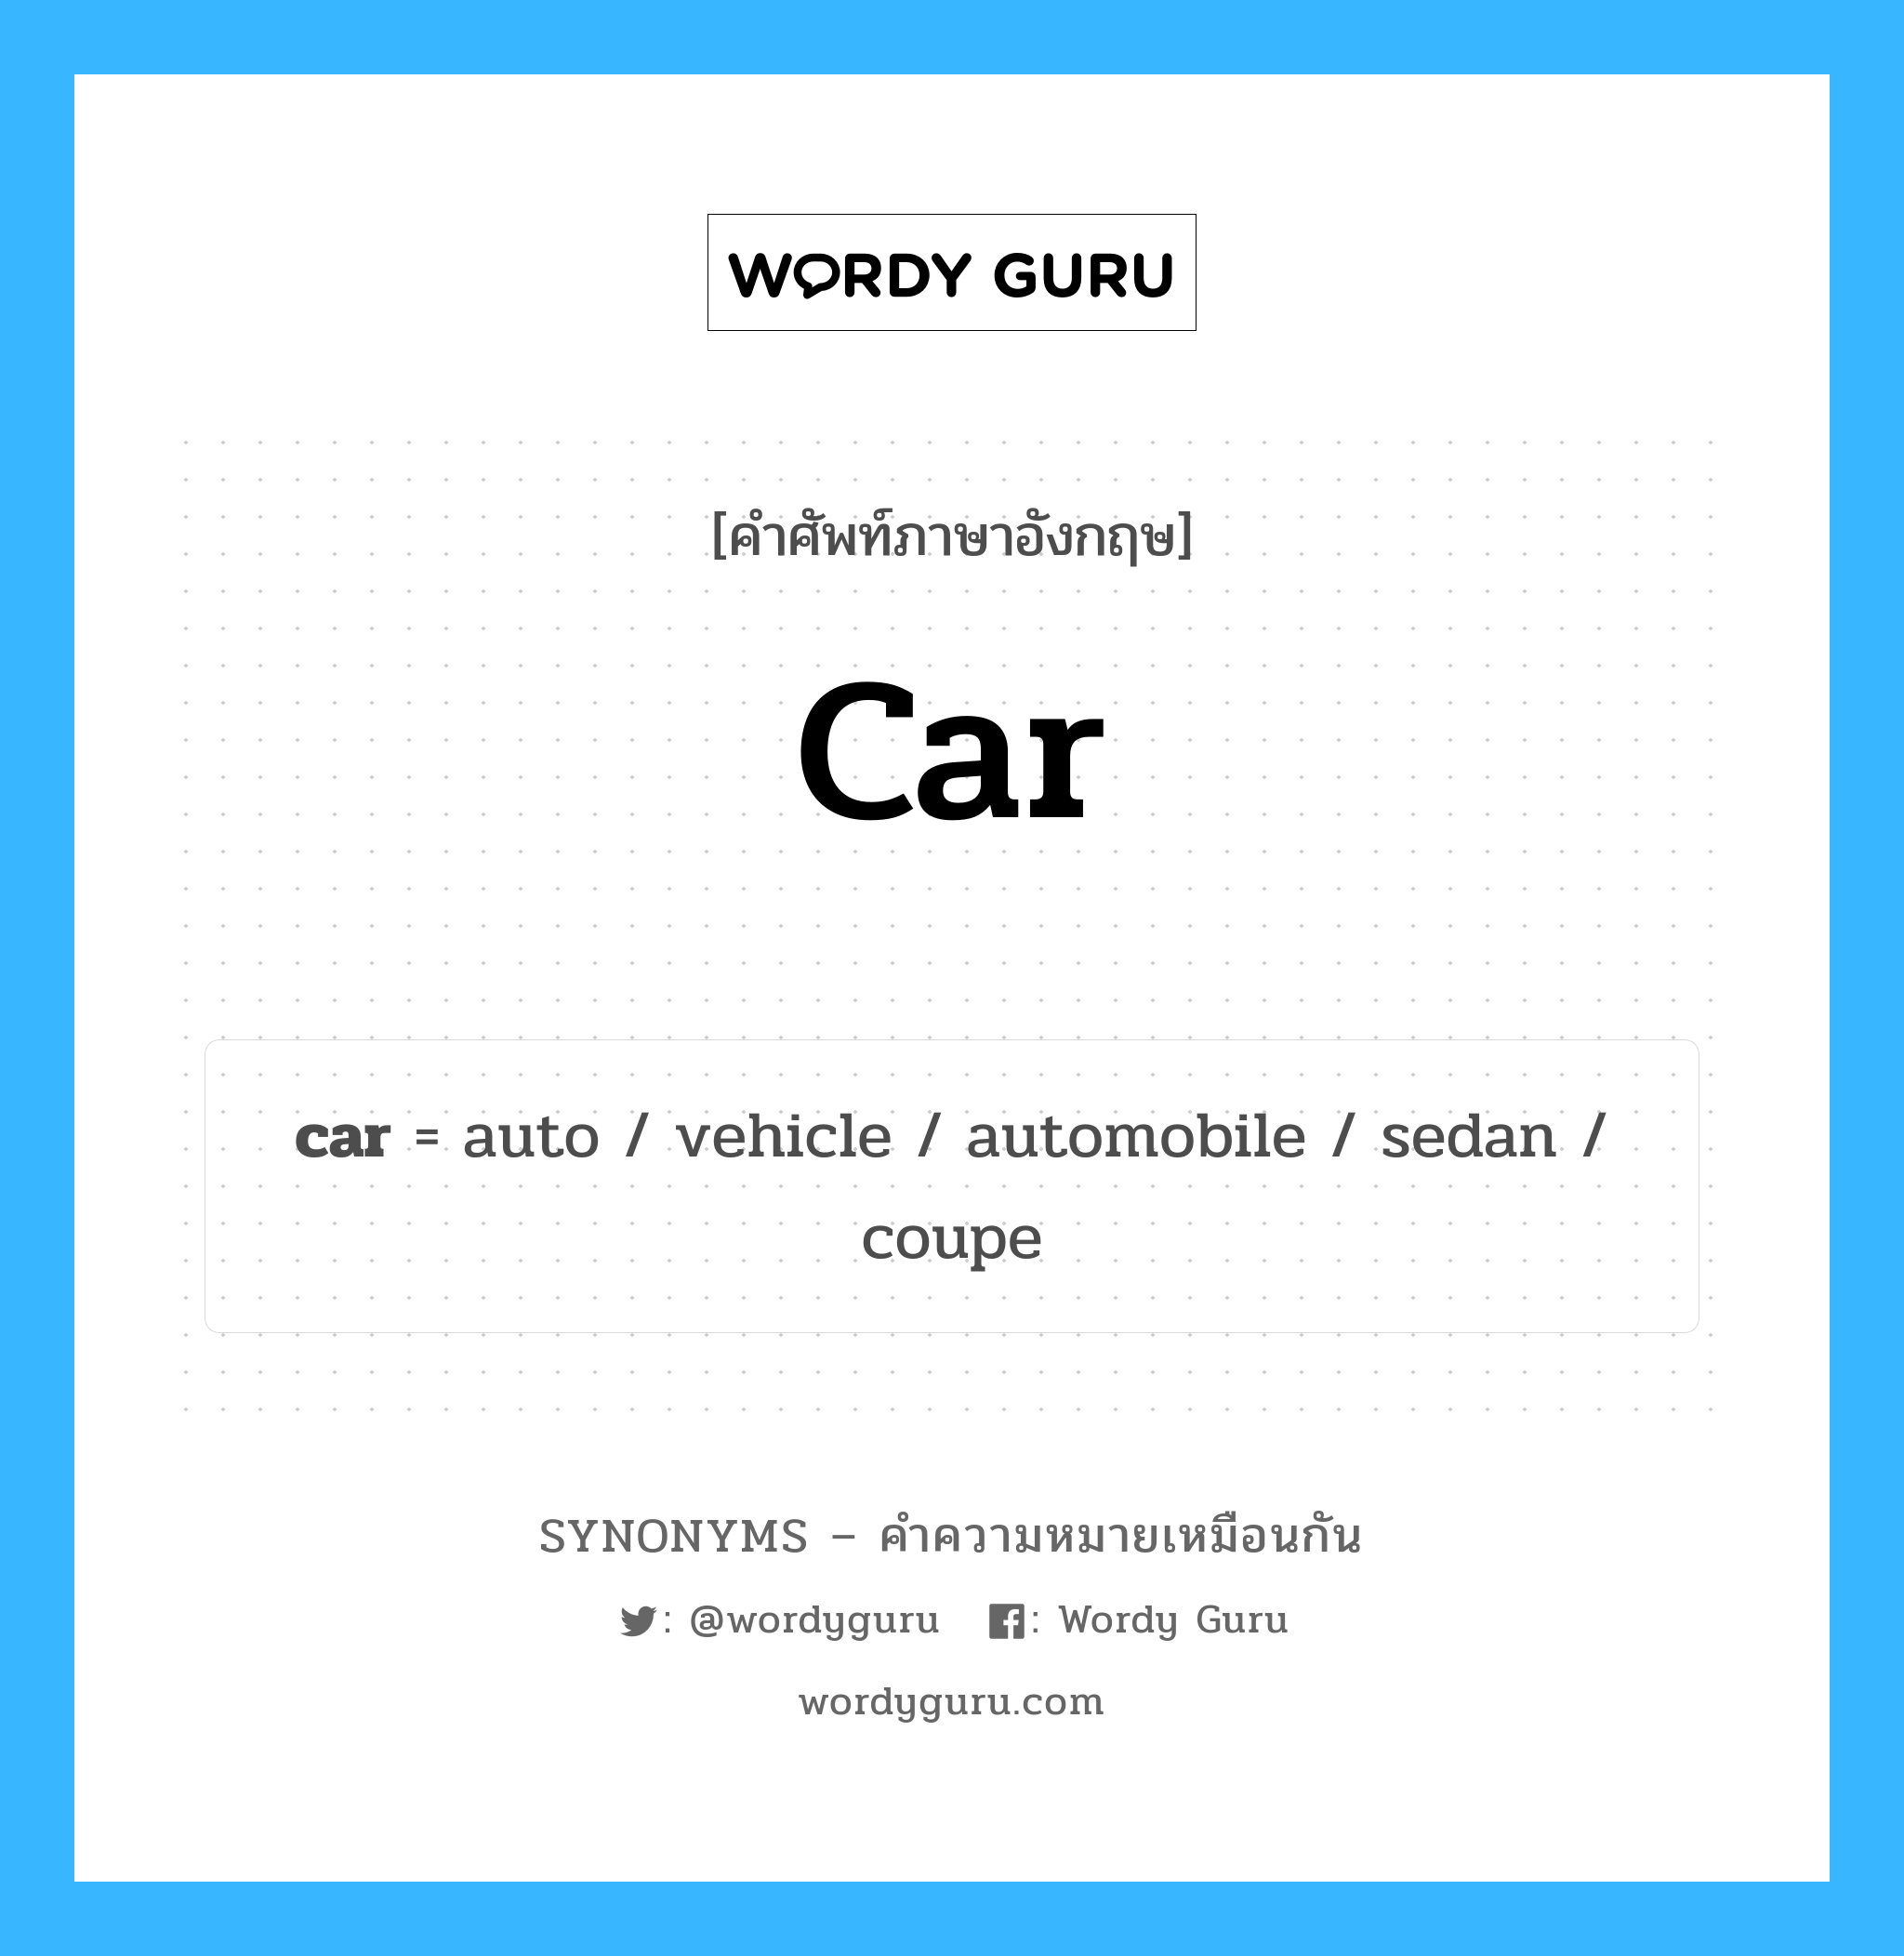 car เป็นหนึ่งใน vehicle และมีคำอื่น ๆ อีกดังนี้, คำศัพท์ภาษาอังกฤษ car ความหมายคล้ายกันกับ vehicle แปลว่า ยานพาหนะ หมวด vehicle